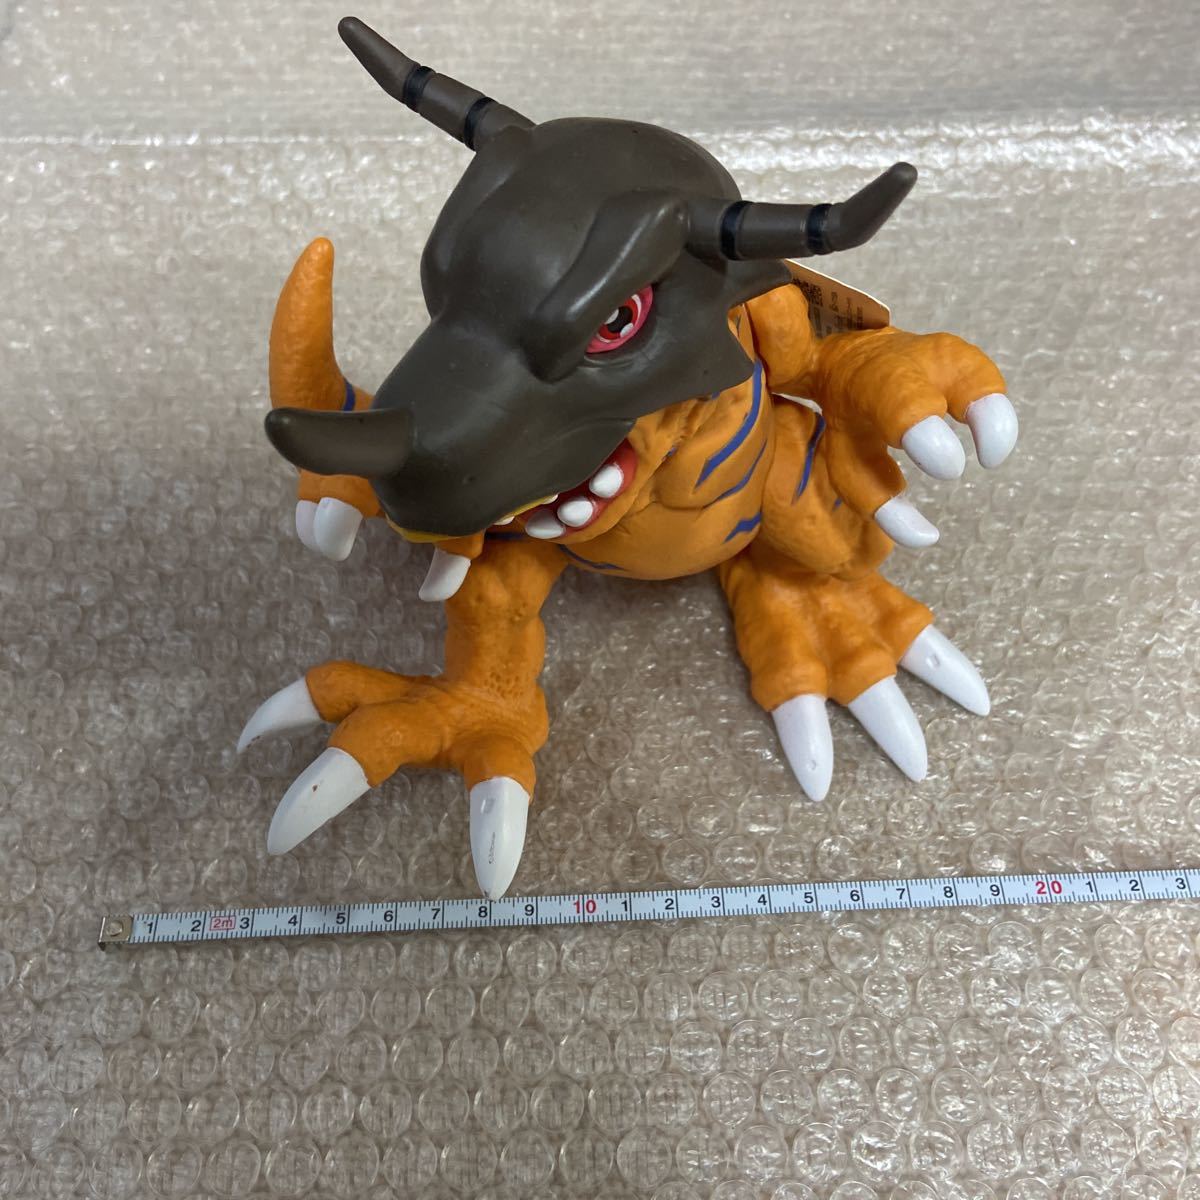  новый товар digimon приключения g Laymon Dyna motion BANDAI фигурка кукла интерьер игрушка примерно 20cm sofvi основной Pokemon 